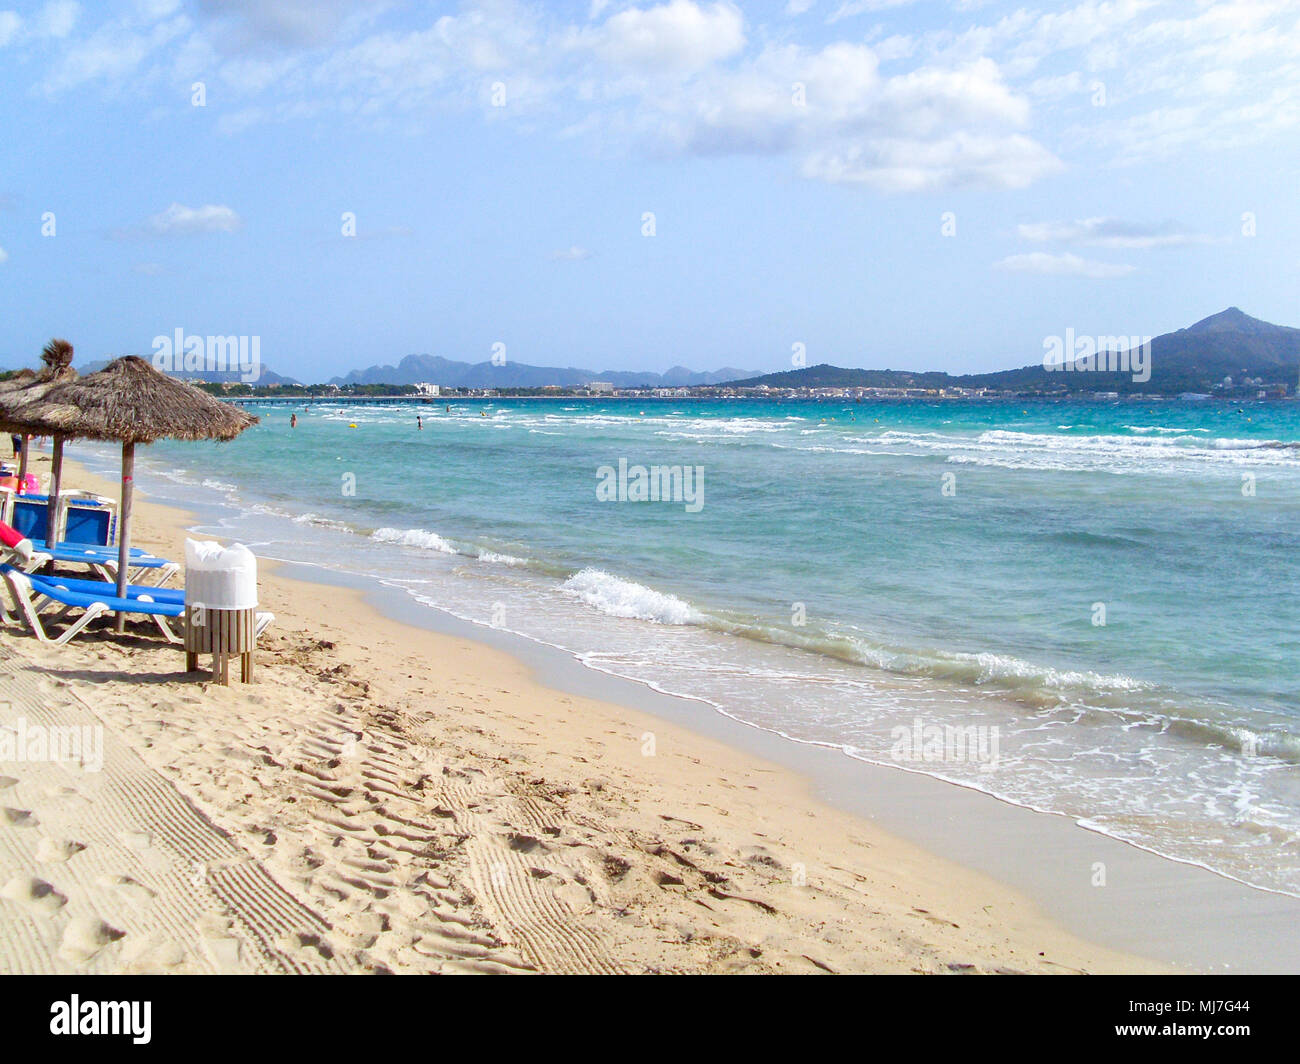 Plage de sable blanc, chaises longues, et l'eau bleue à l'horizon de l'île Banque D'Images